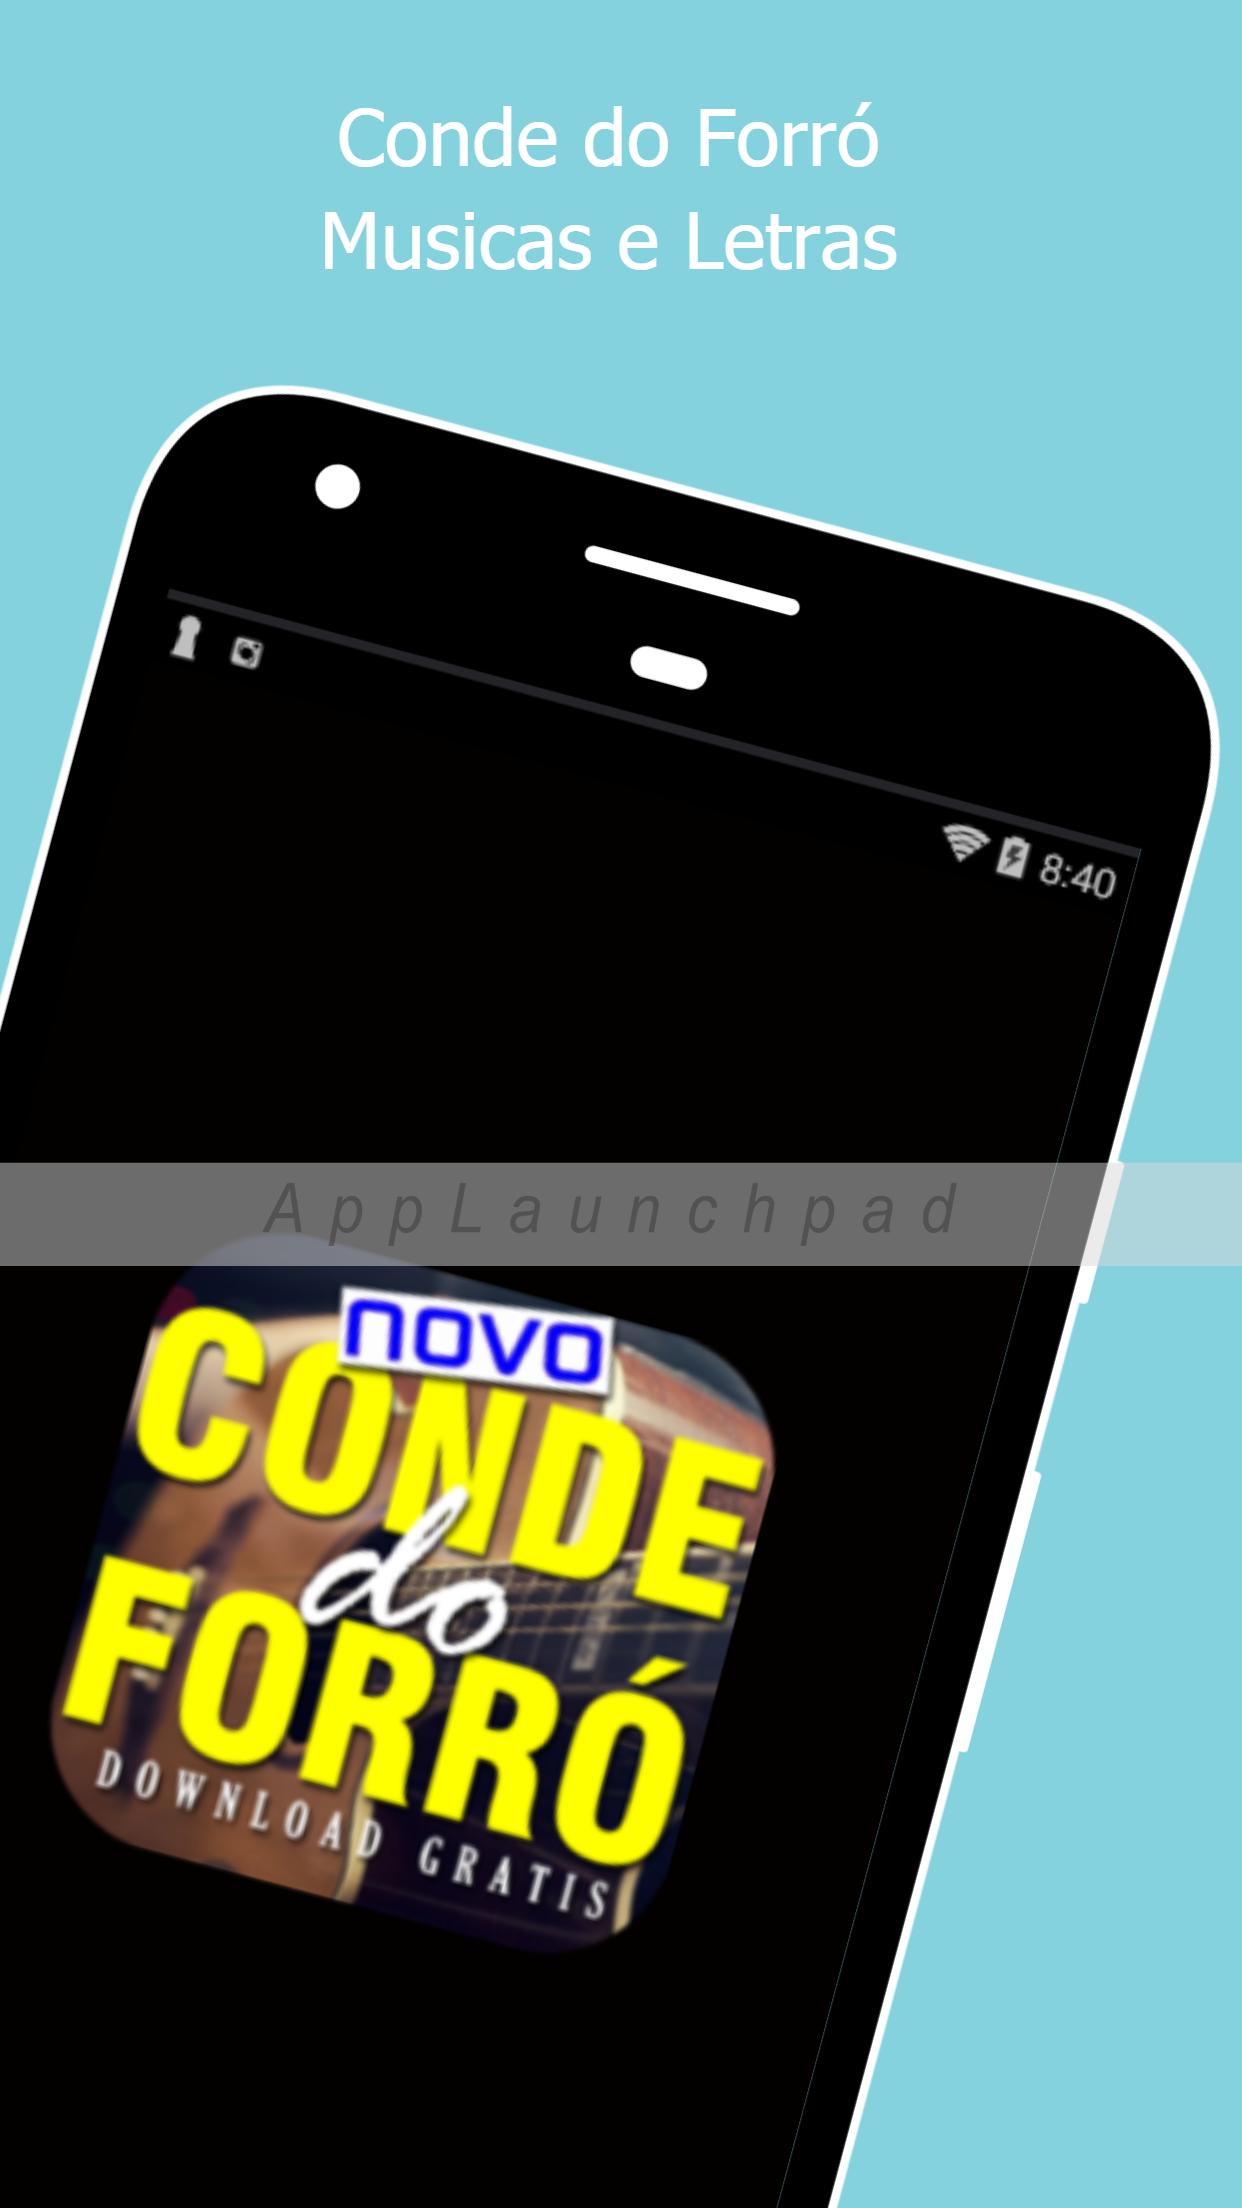 CONDE DO FORRÓ palco mp3 2018 sua musica novo for Android - APK Download